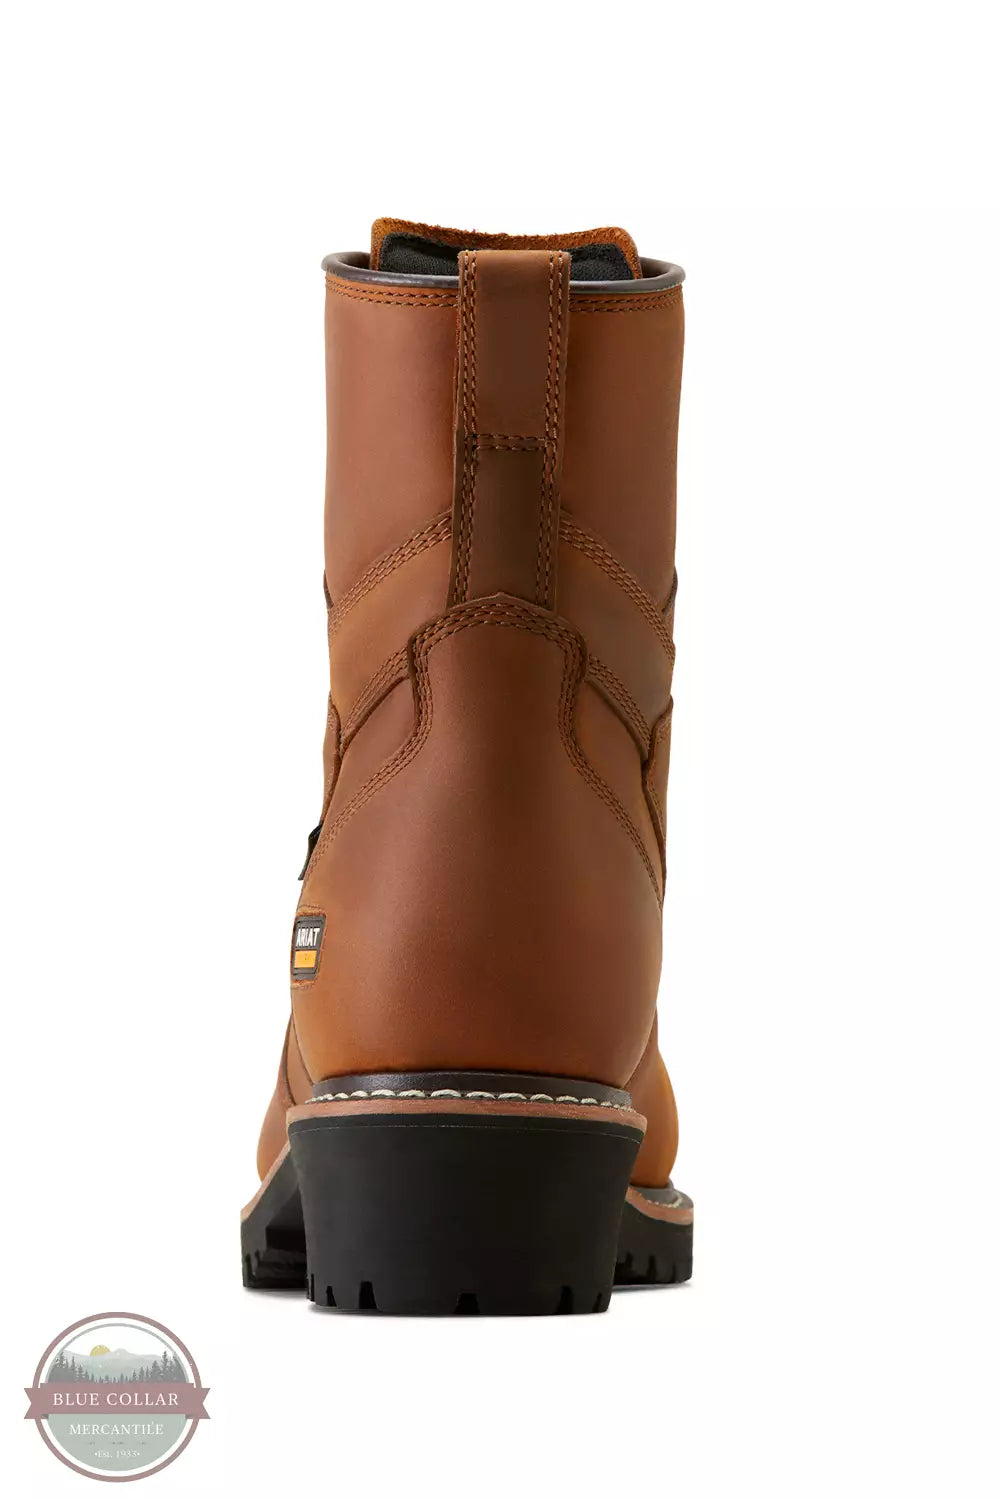 Ariat 10050840 Logger Shock Shield Waterproof Composite Toe Work Boots Heel View